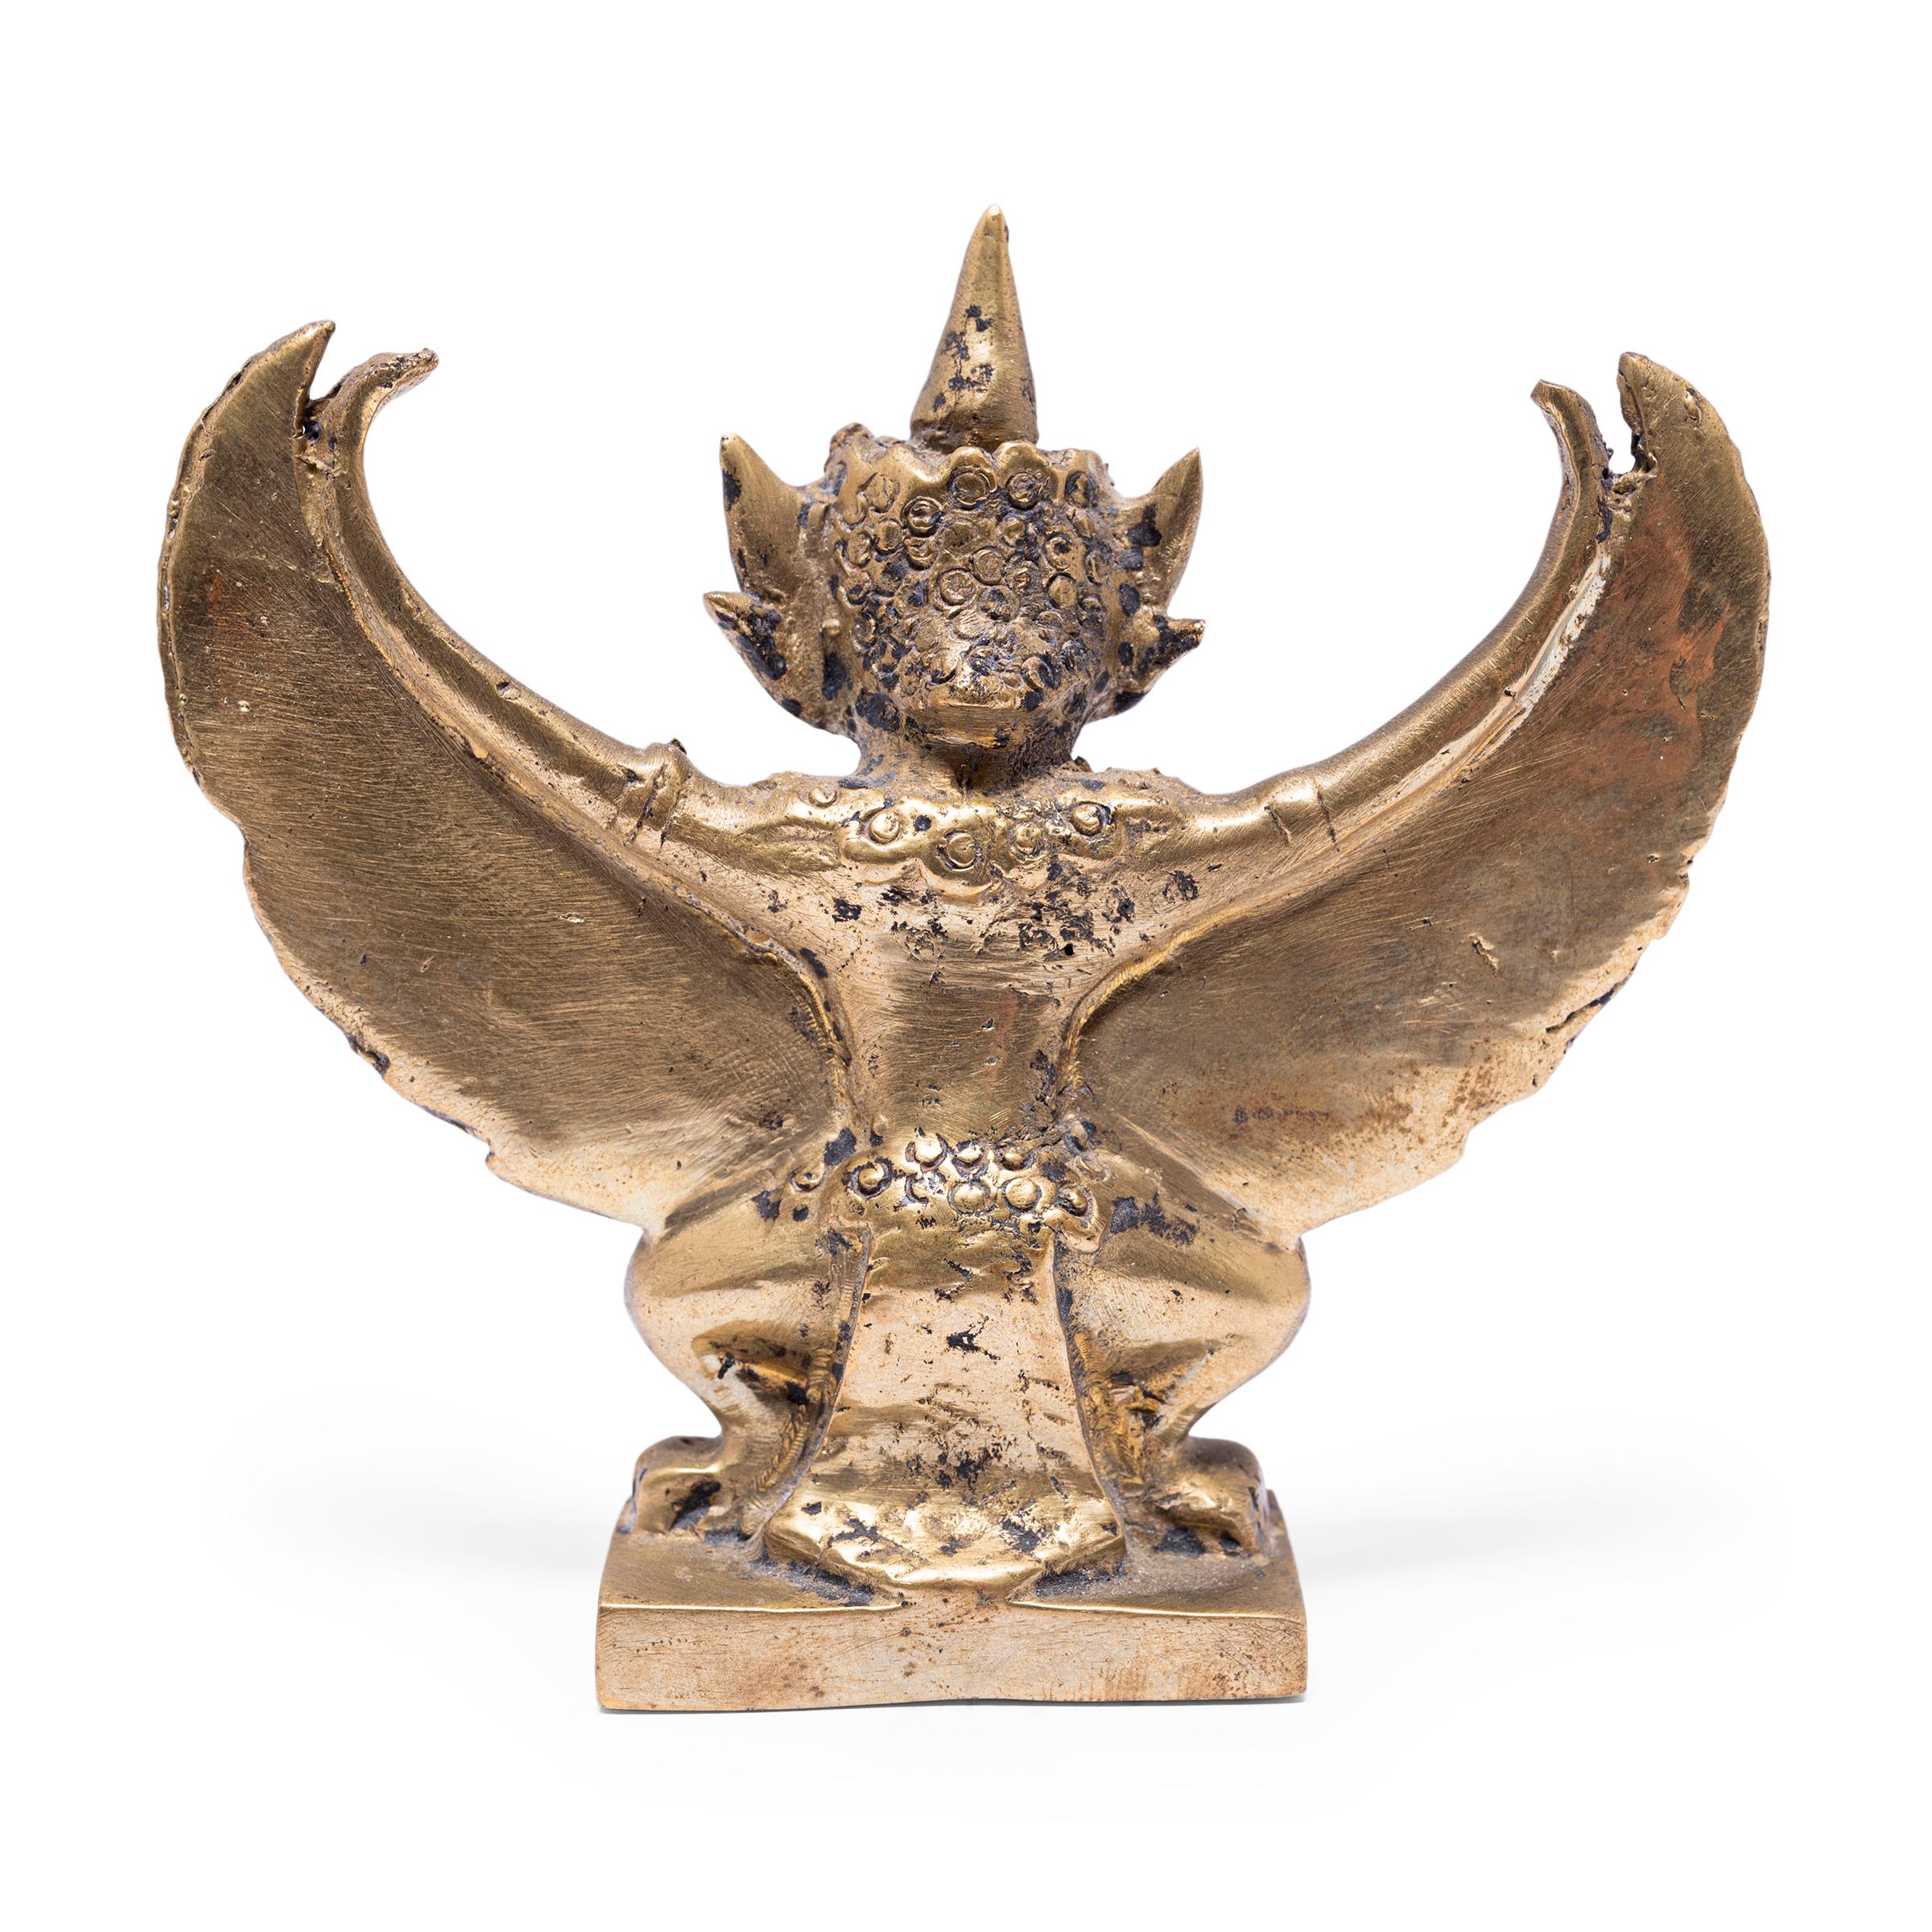 Cette petite figurine en bronze est coulée sous la forme de Garuda, demi-dieu et roi mythique des oiseaux dans la foi hindoue et bouddhiste. Prenant la forme mi-oiseau mi-homme, Garuda est un puissant protecteur et un ennemi toujours vigilant du